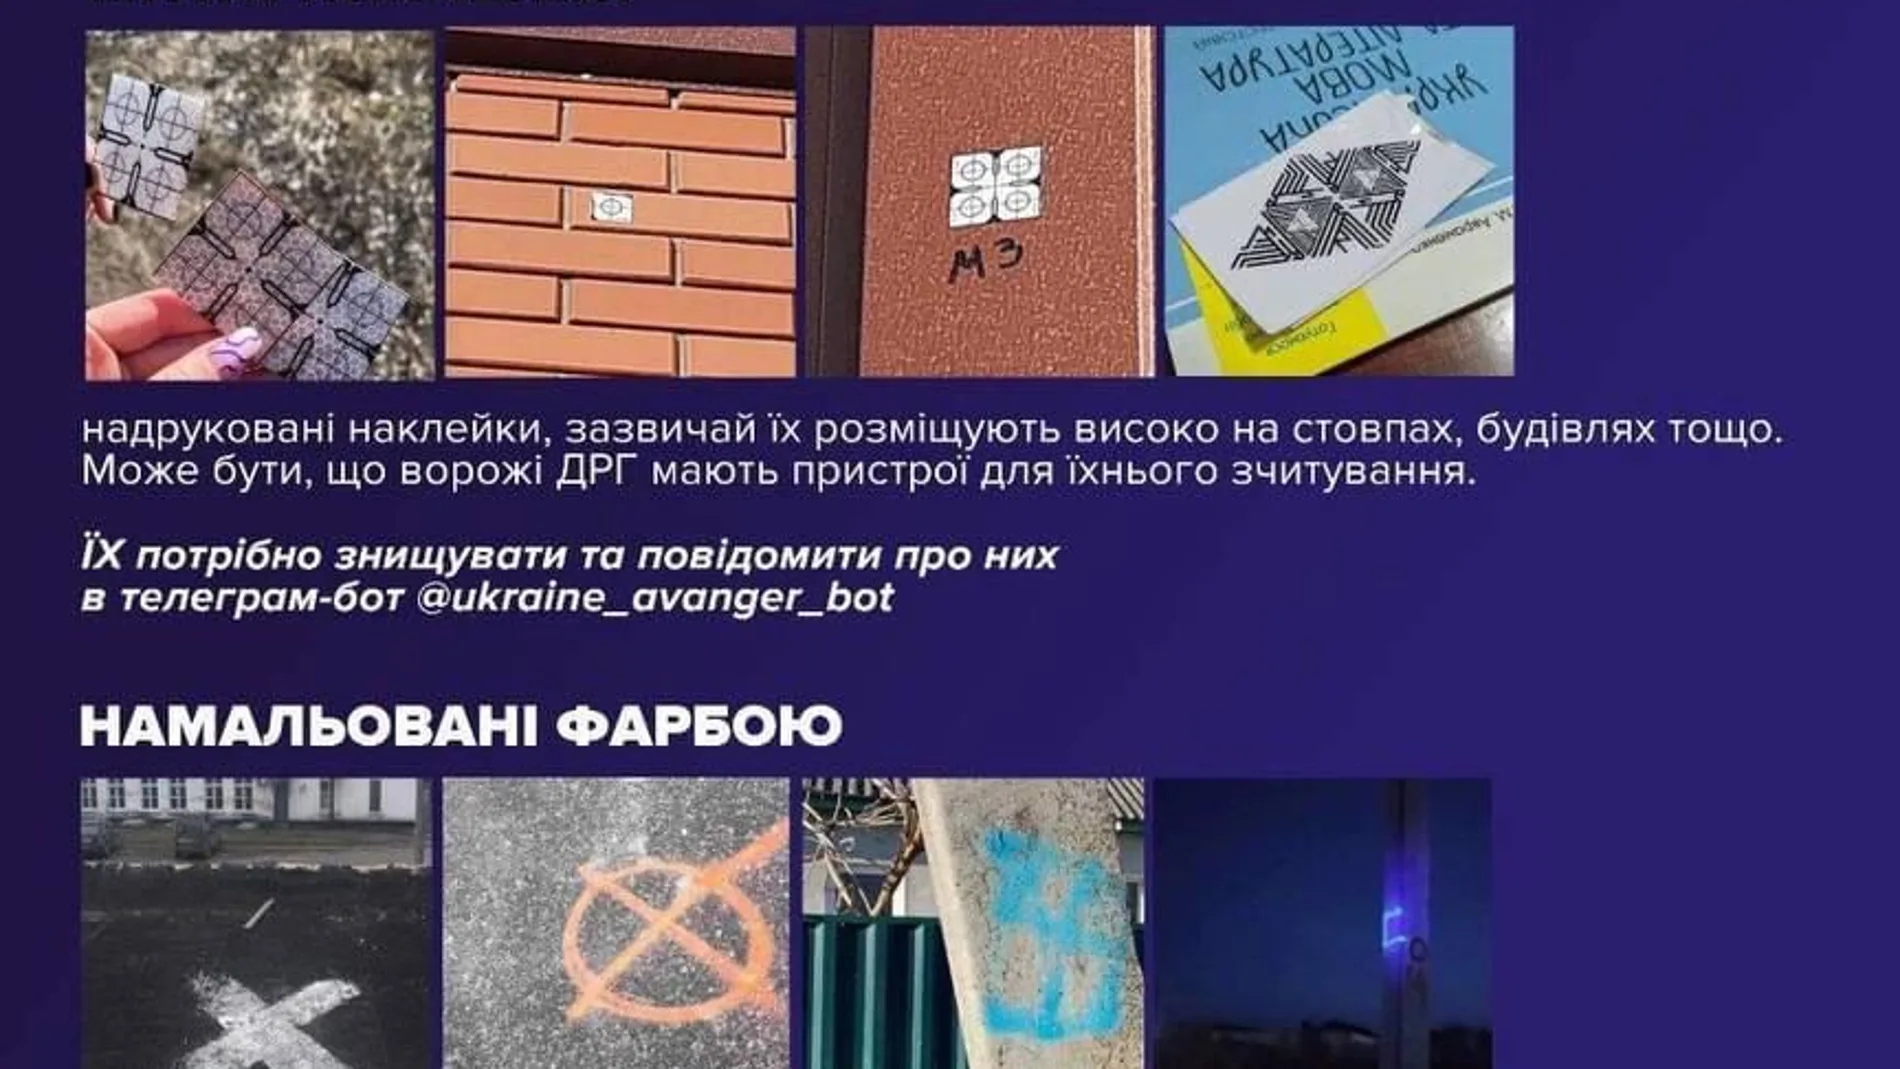 Panfleto sobre las pintadas aparecidas en edificios ucranianos, que crean los civiles y los distribuyen por redes sociales